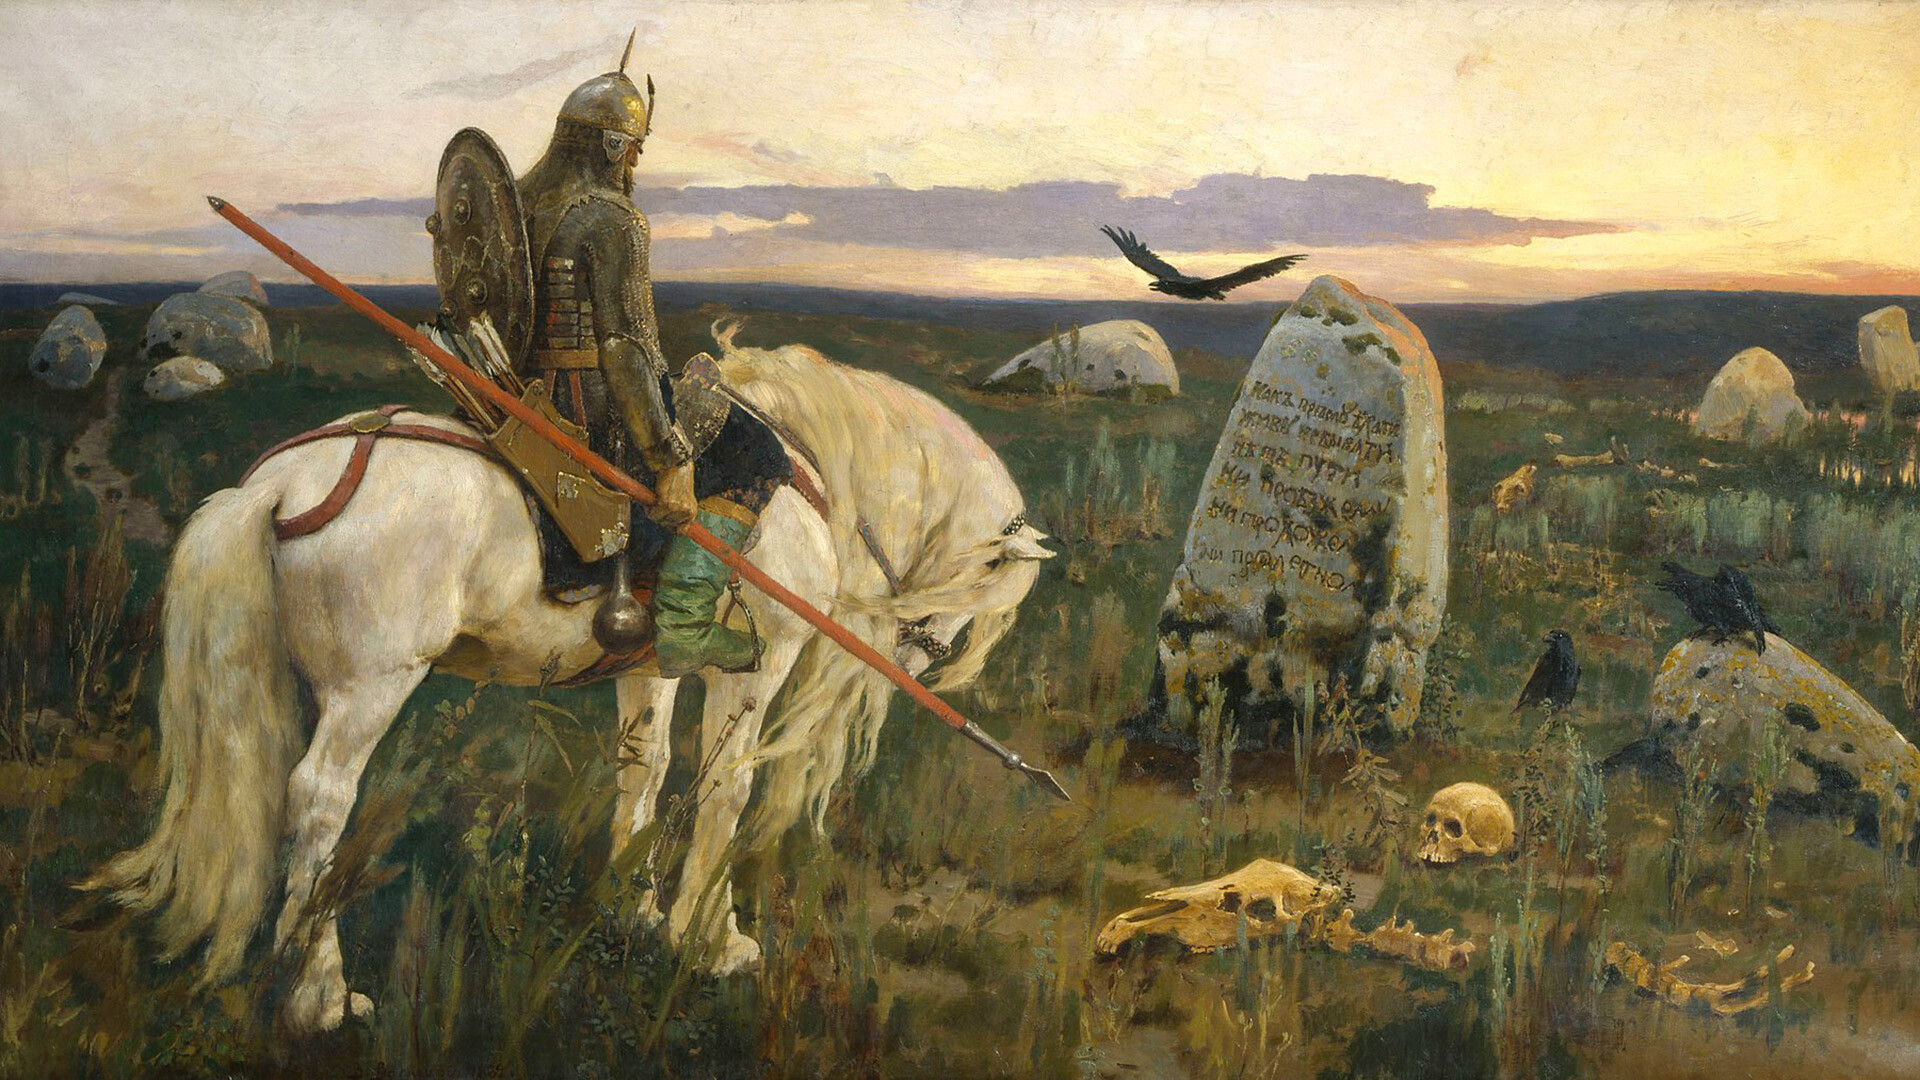 Der Recke am Scheideweg von Wiktor Wasnezow, 1882 